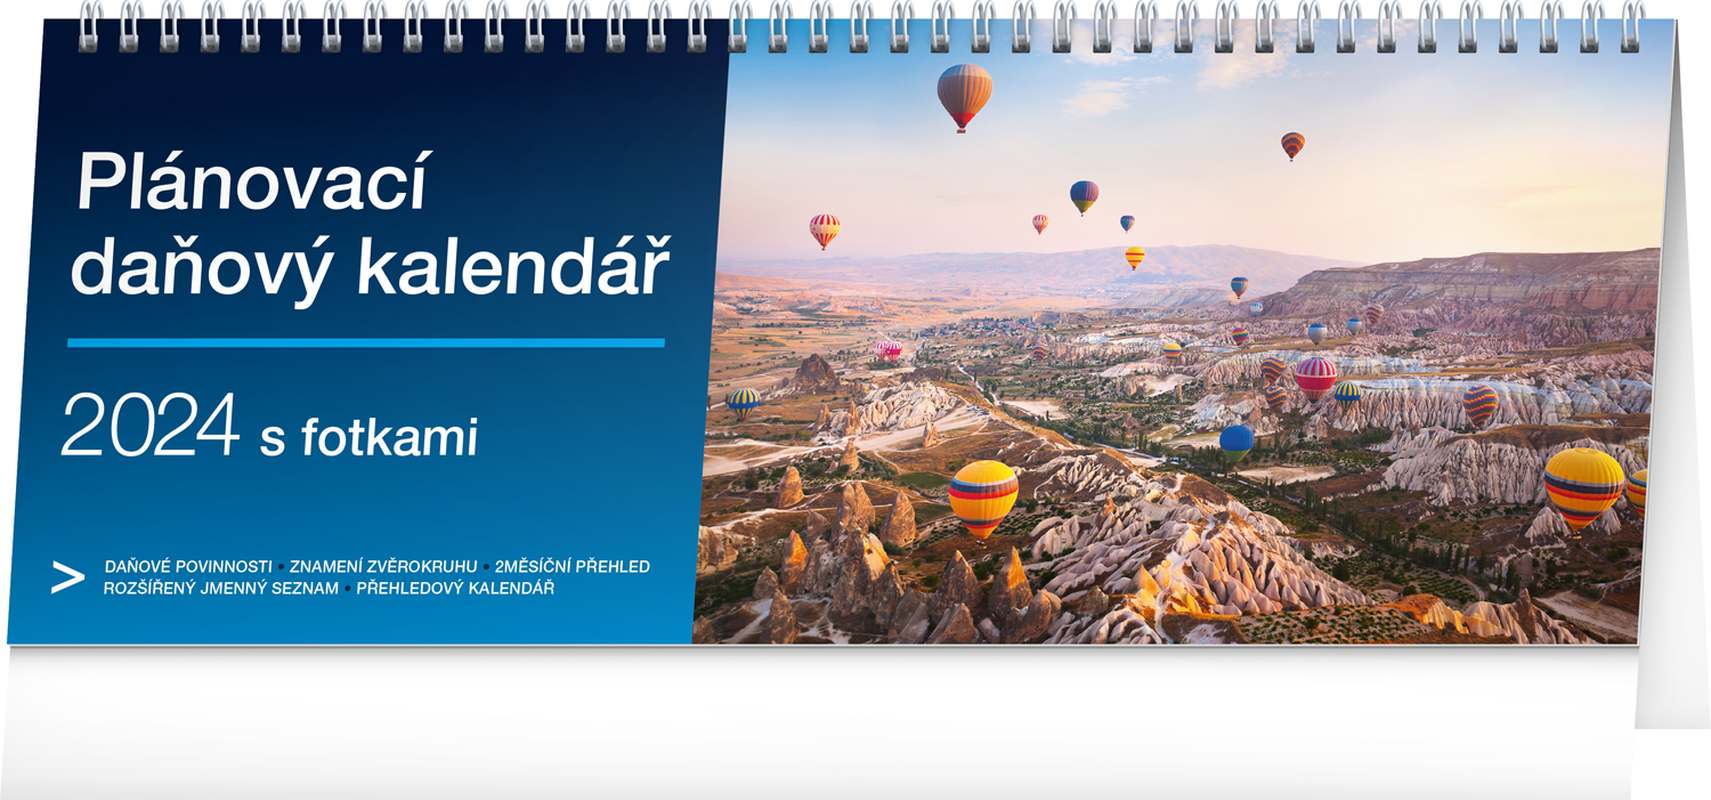 Stolní kalendář Plánovací daňový s fotkami 2024, 33 x 12,5 cm